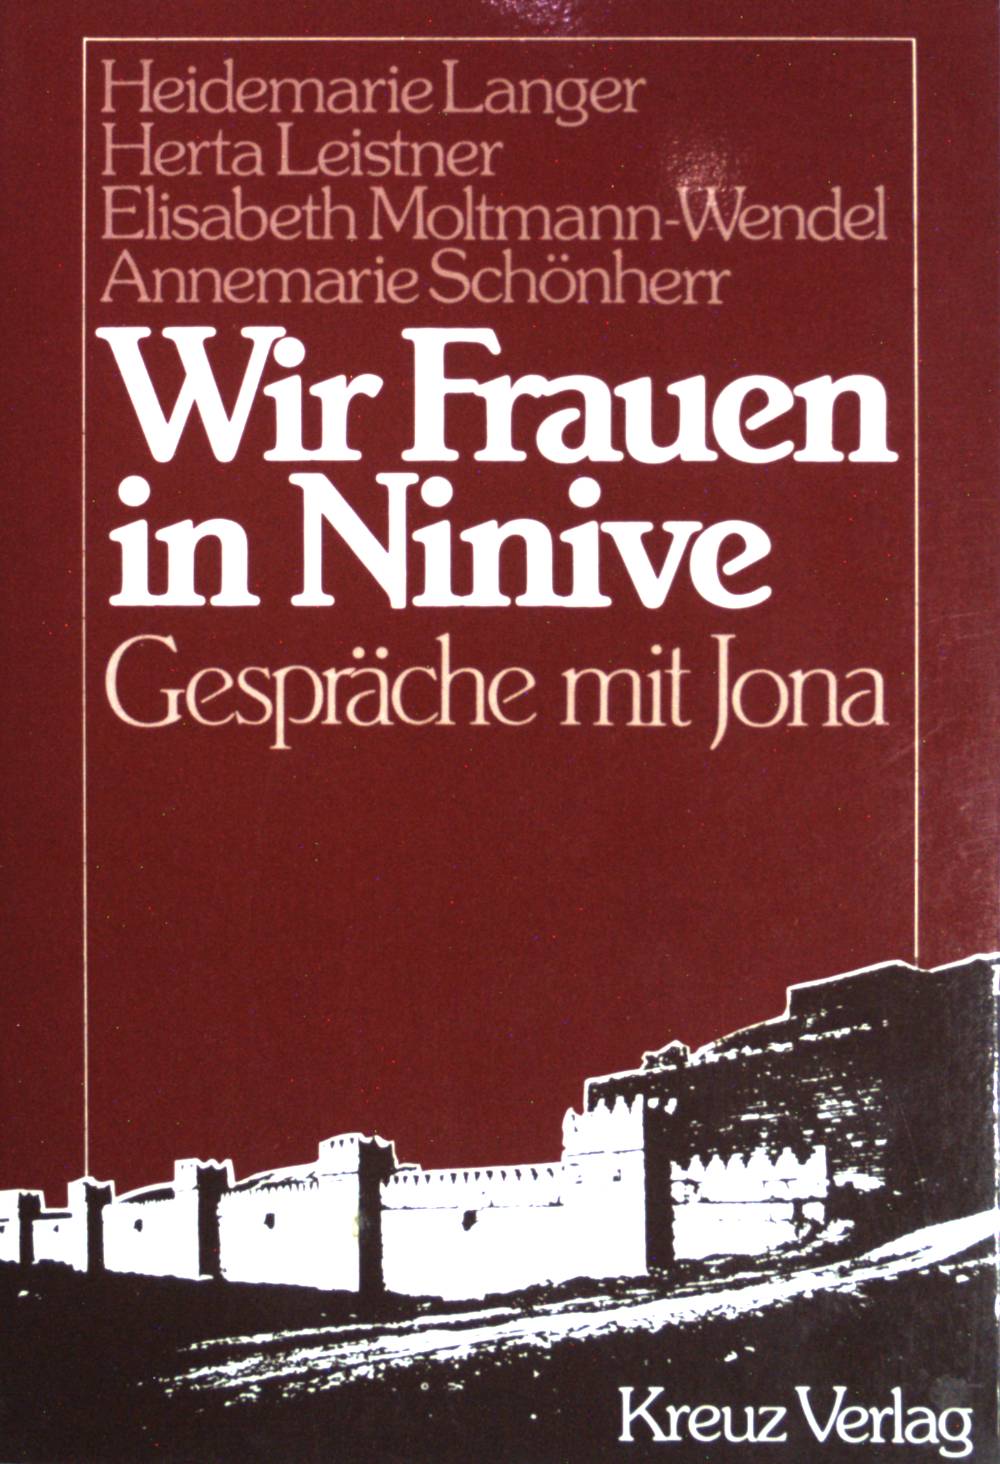 Wir Frauen in Ninive : Gespräche mit Jona. - Langer, Heidemarie